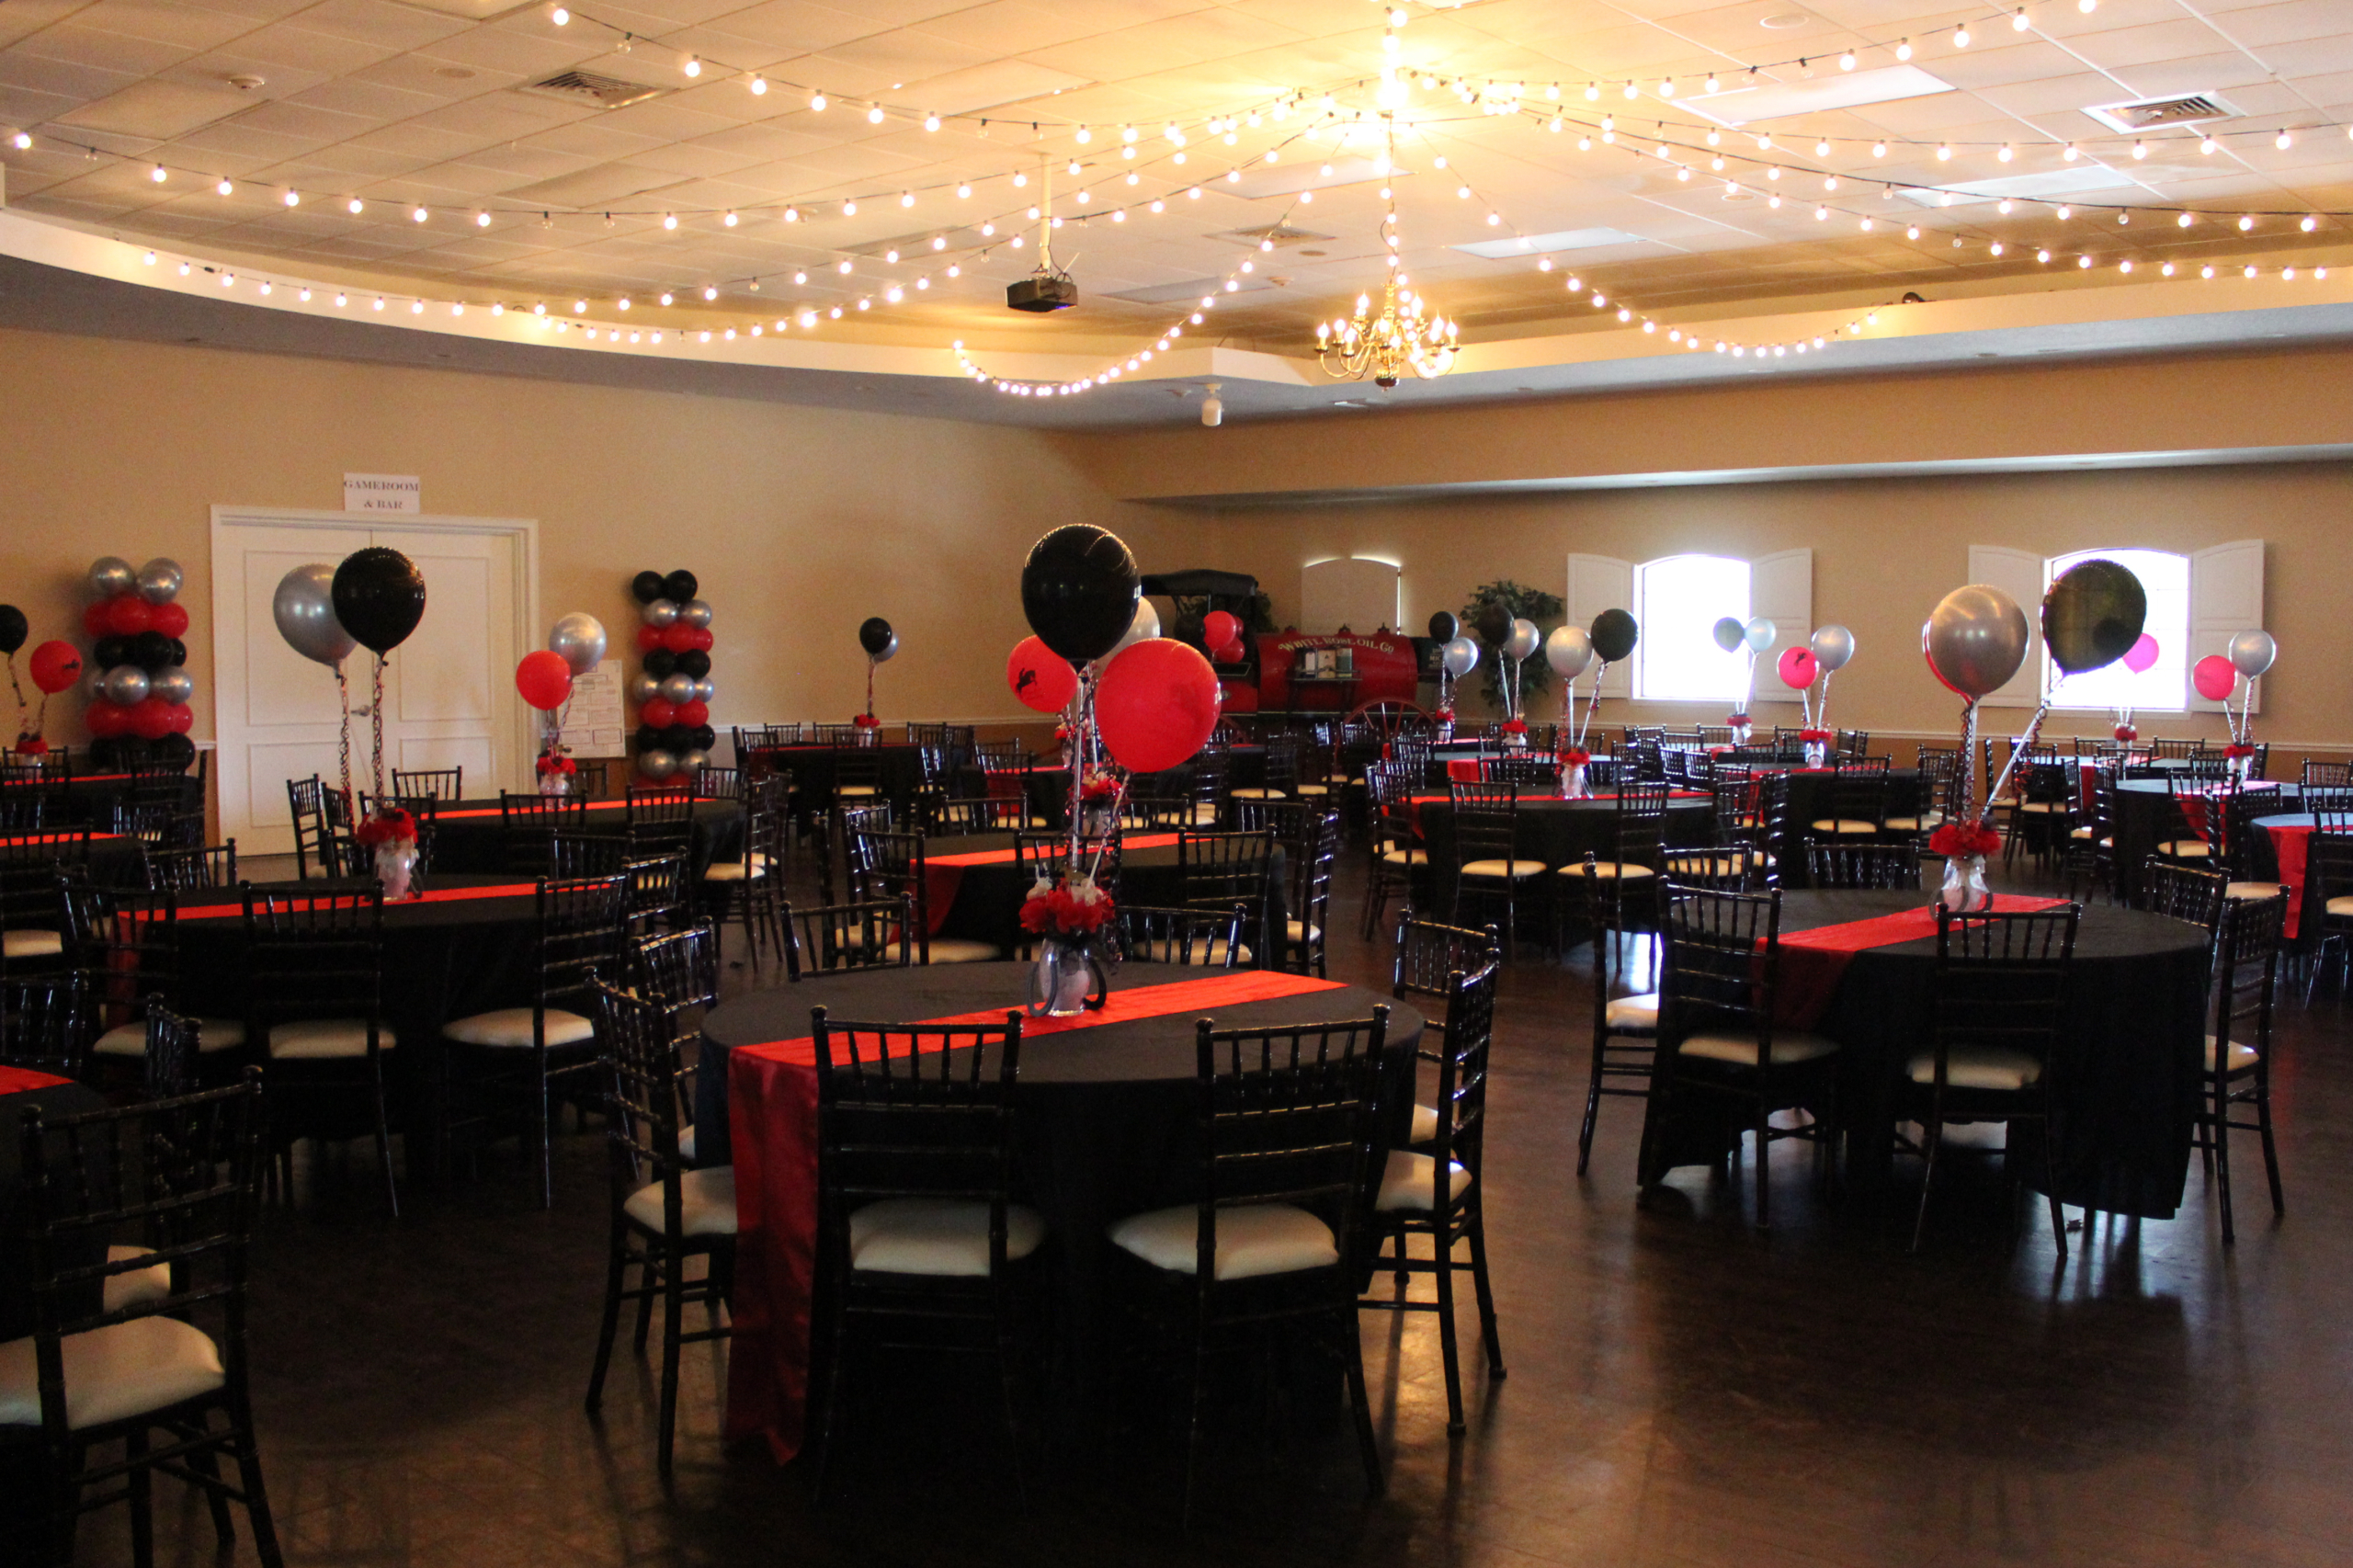 The Oak Room Banquet room at the Grand Oaks Resort